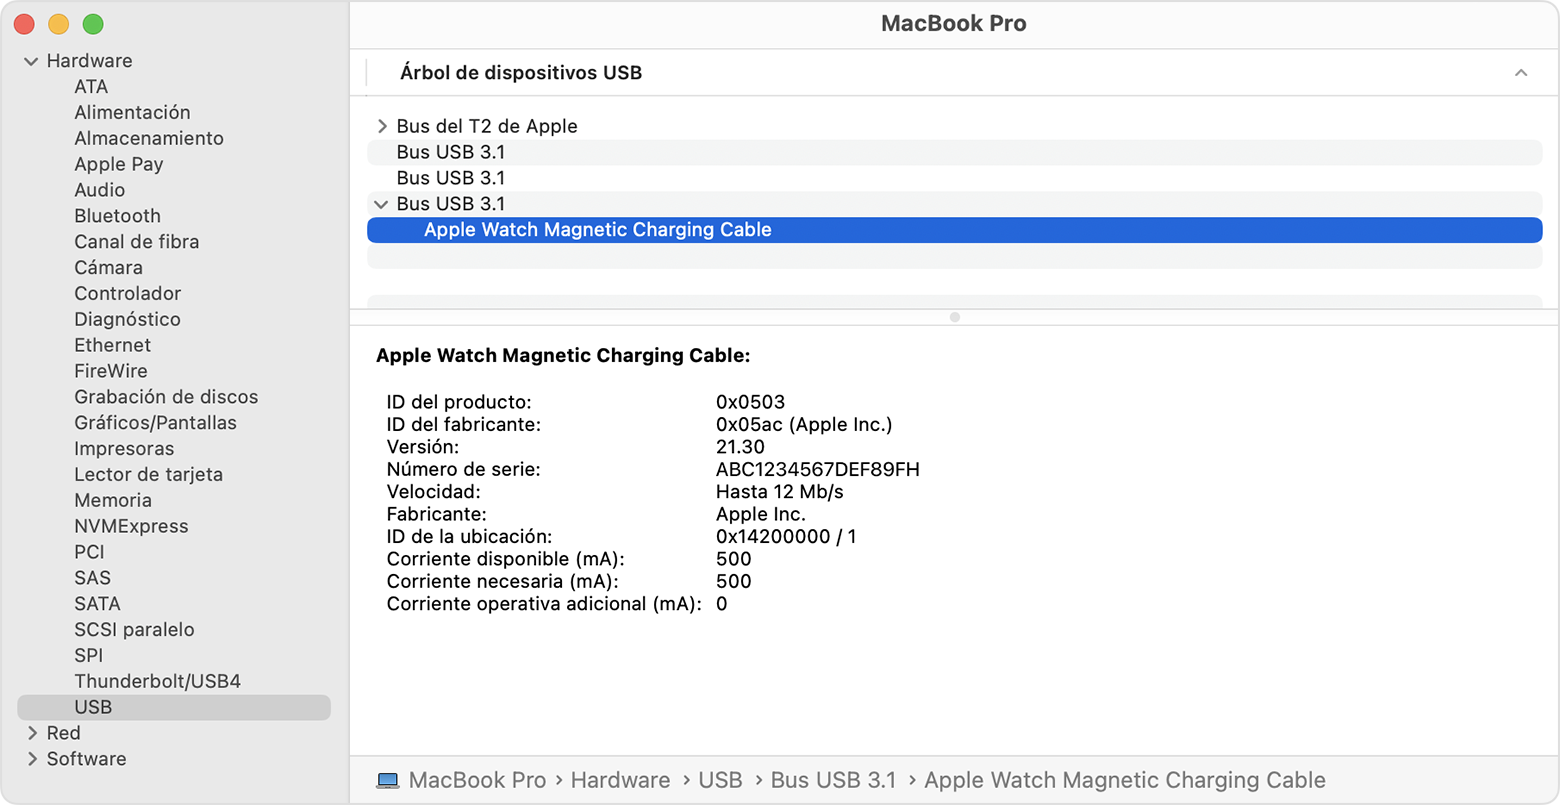 Informe del sistema de la MacBook Pro en el que se muestra la información del fabricante del cable de carga magnética del Apple Watch